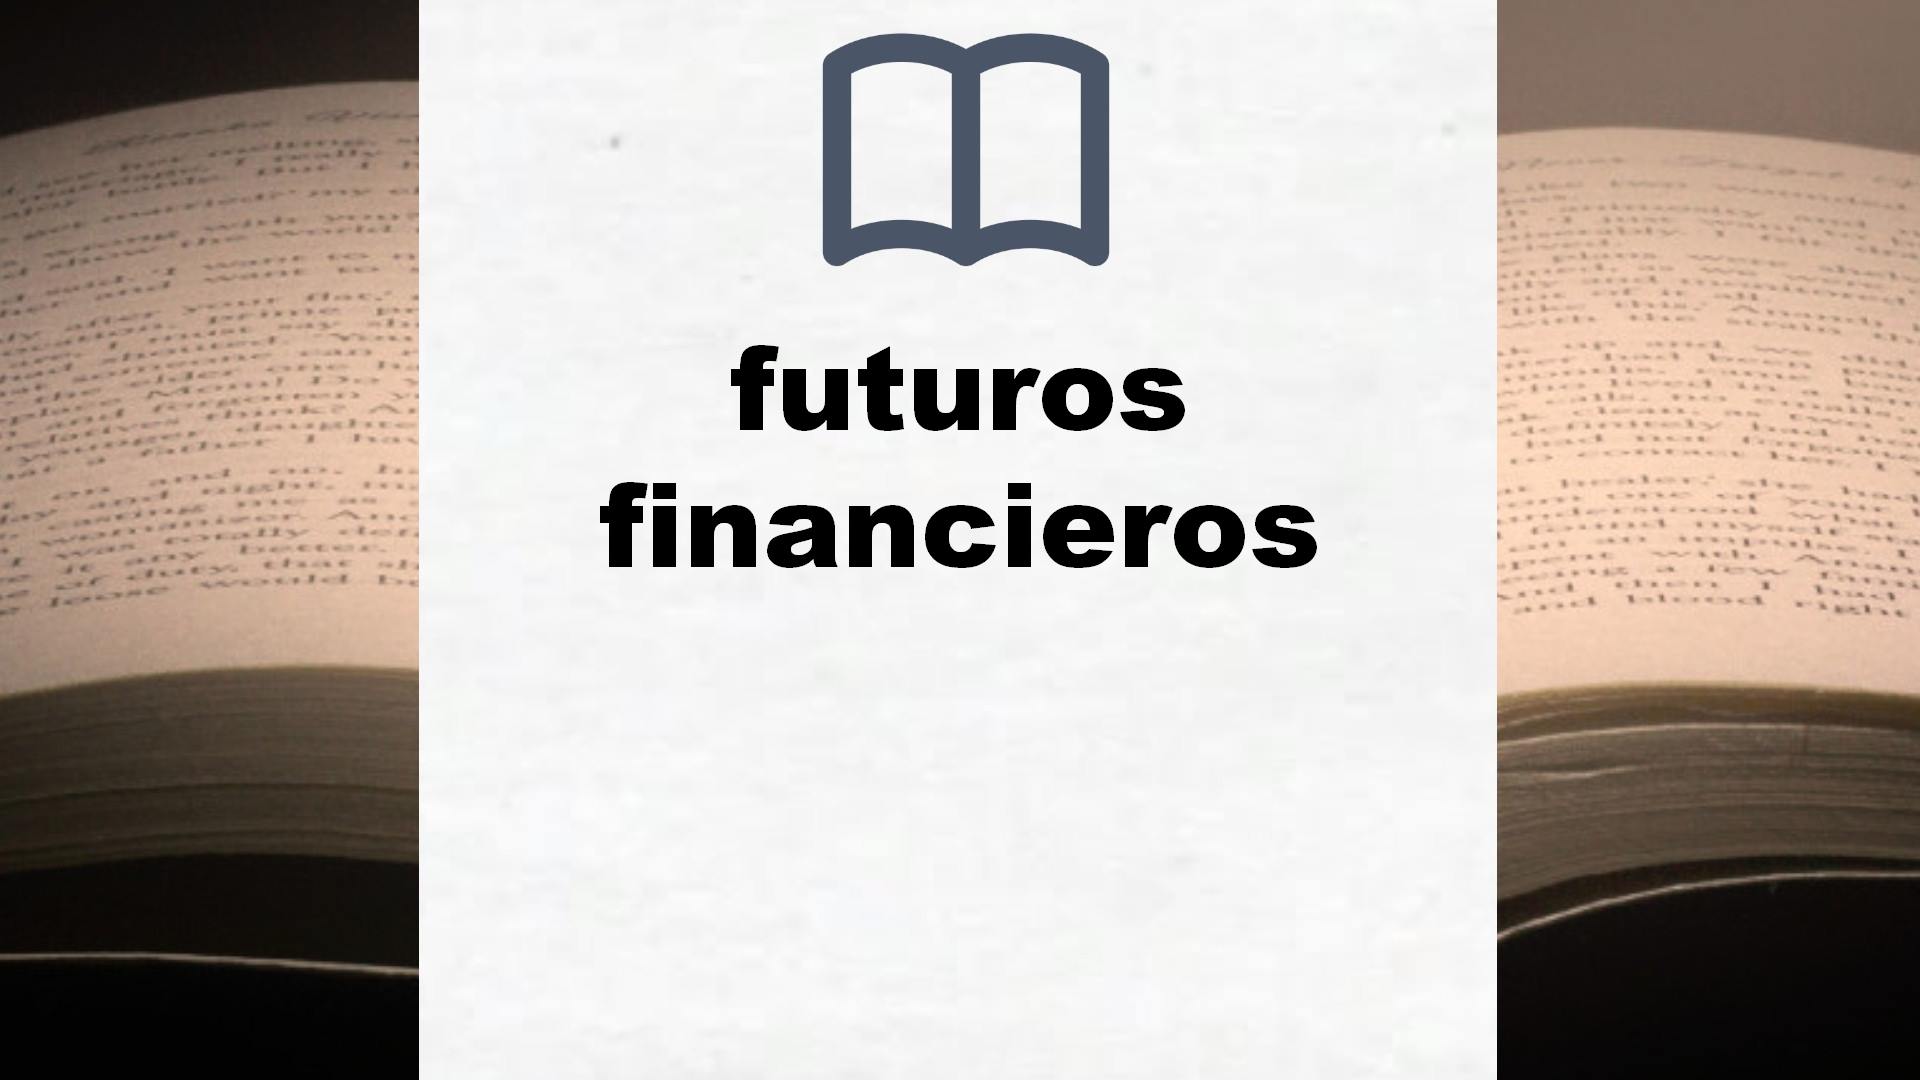 Libros sobre futuros financieros